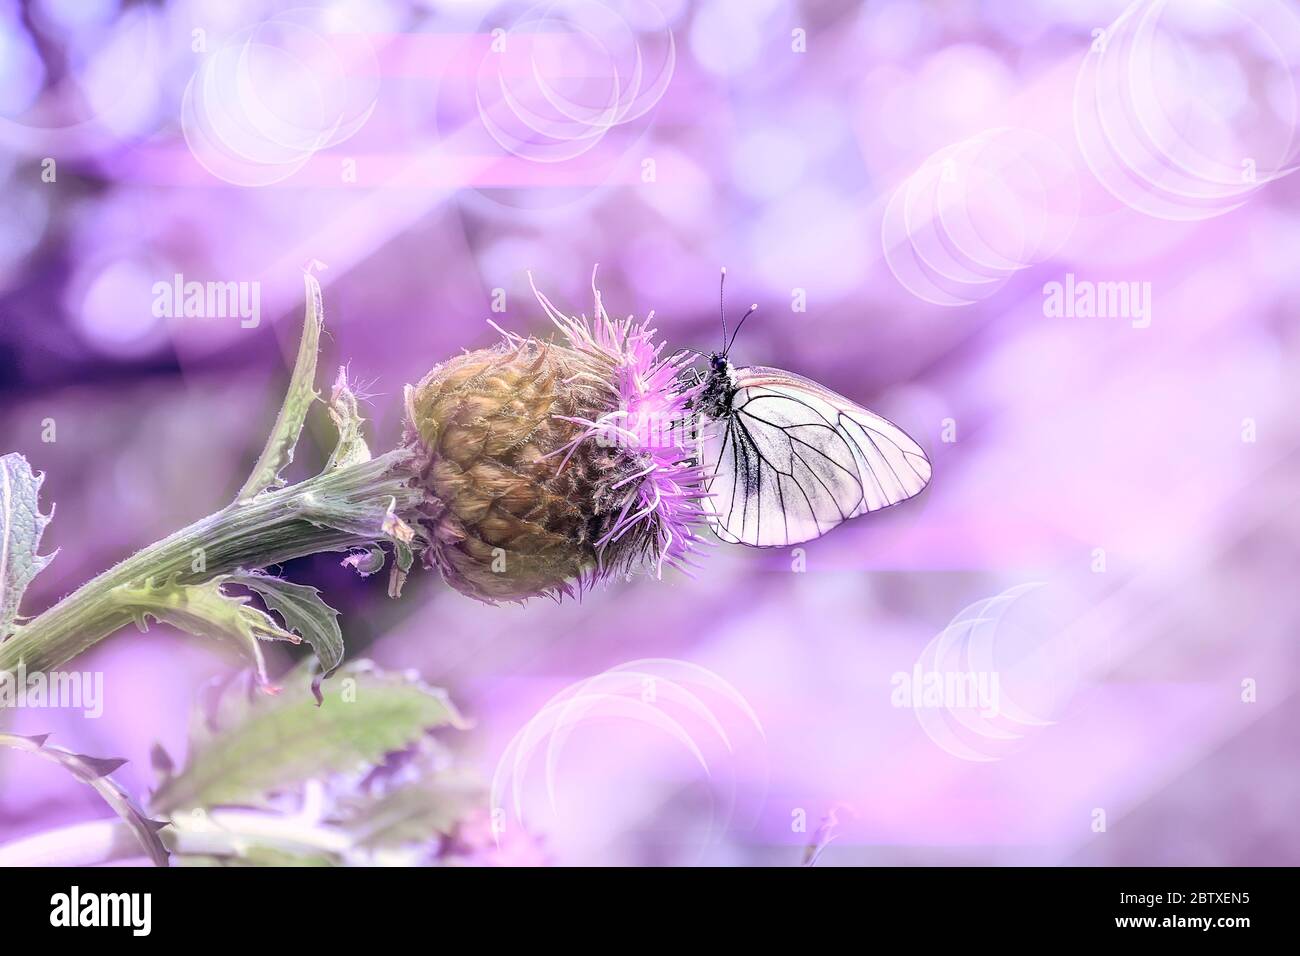 Rosa Sommermorgen auf der Wiese - filigranes künstlerisches Bild. Makro des weißen Schmetterlings auf lila Rhaponticum carthamoides Blume - romantisch getönten Sprossen Stockfoto